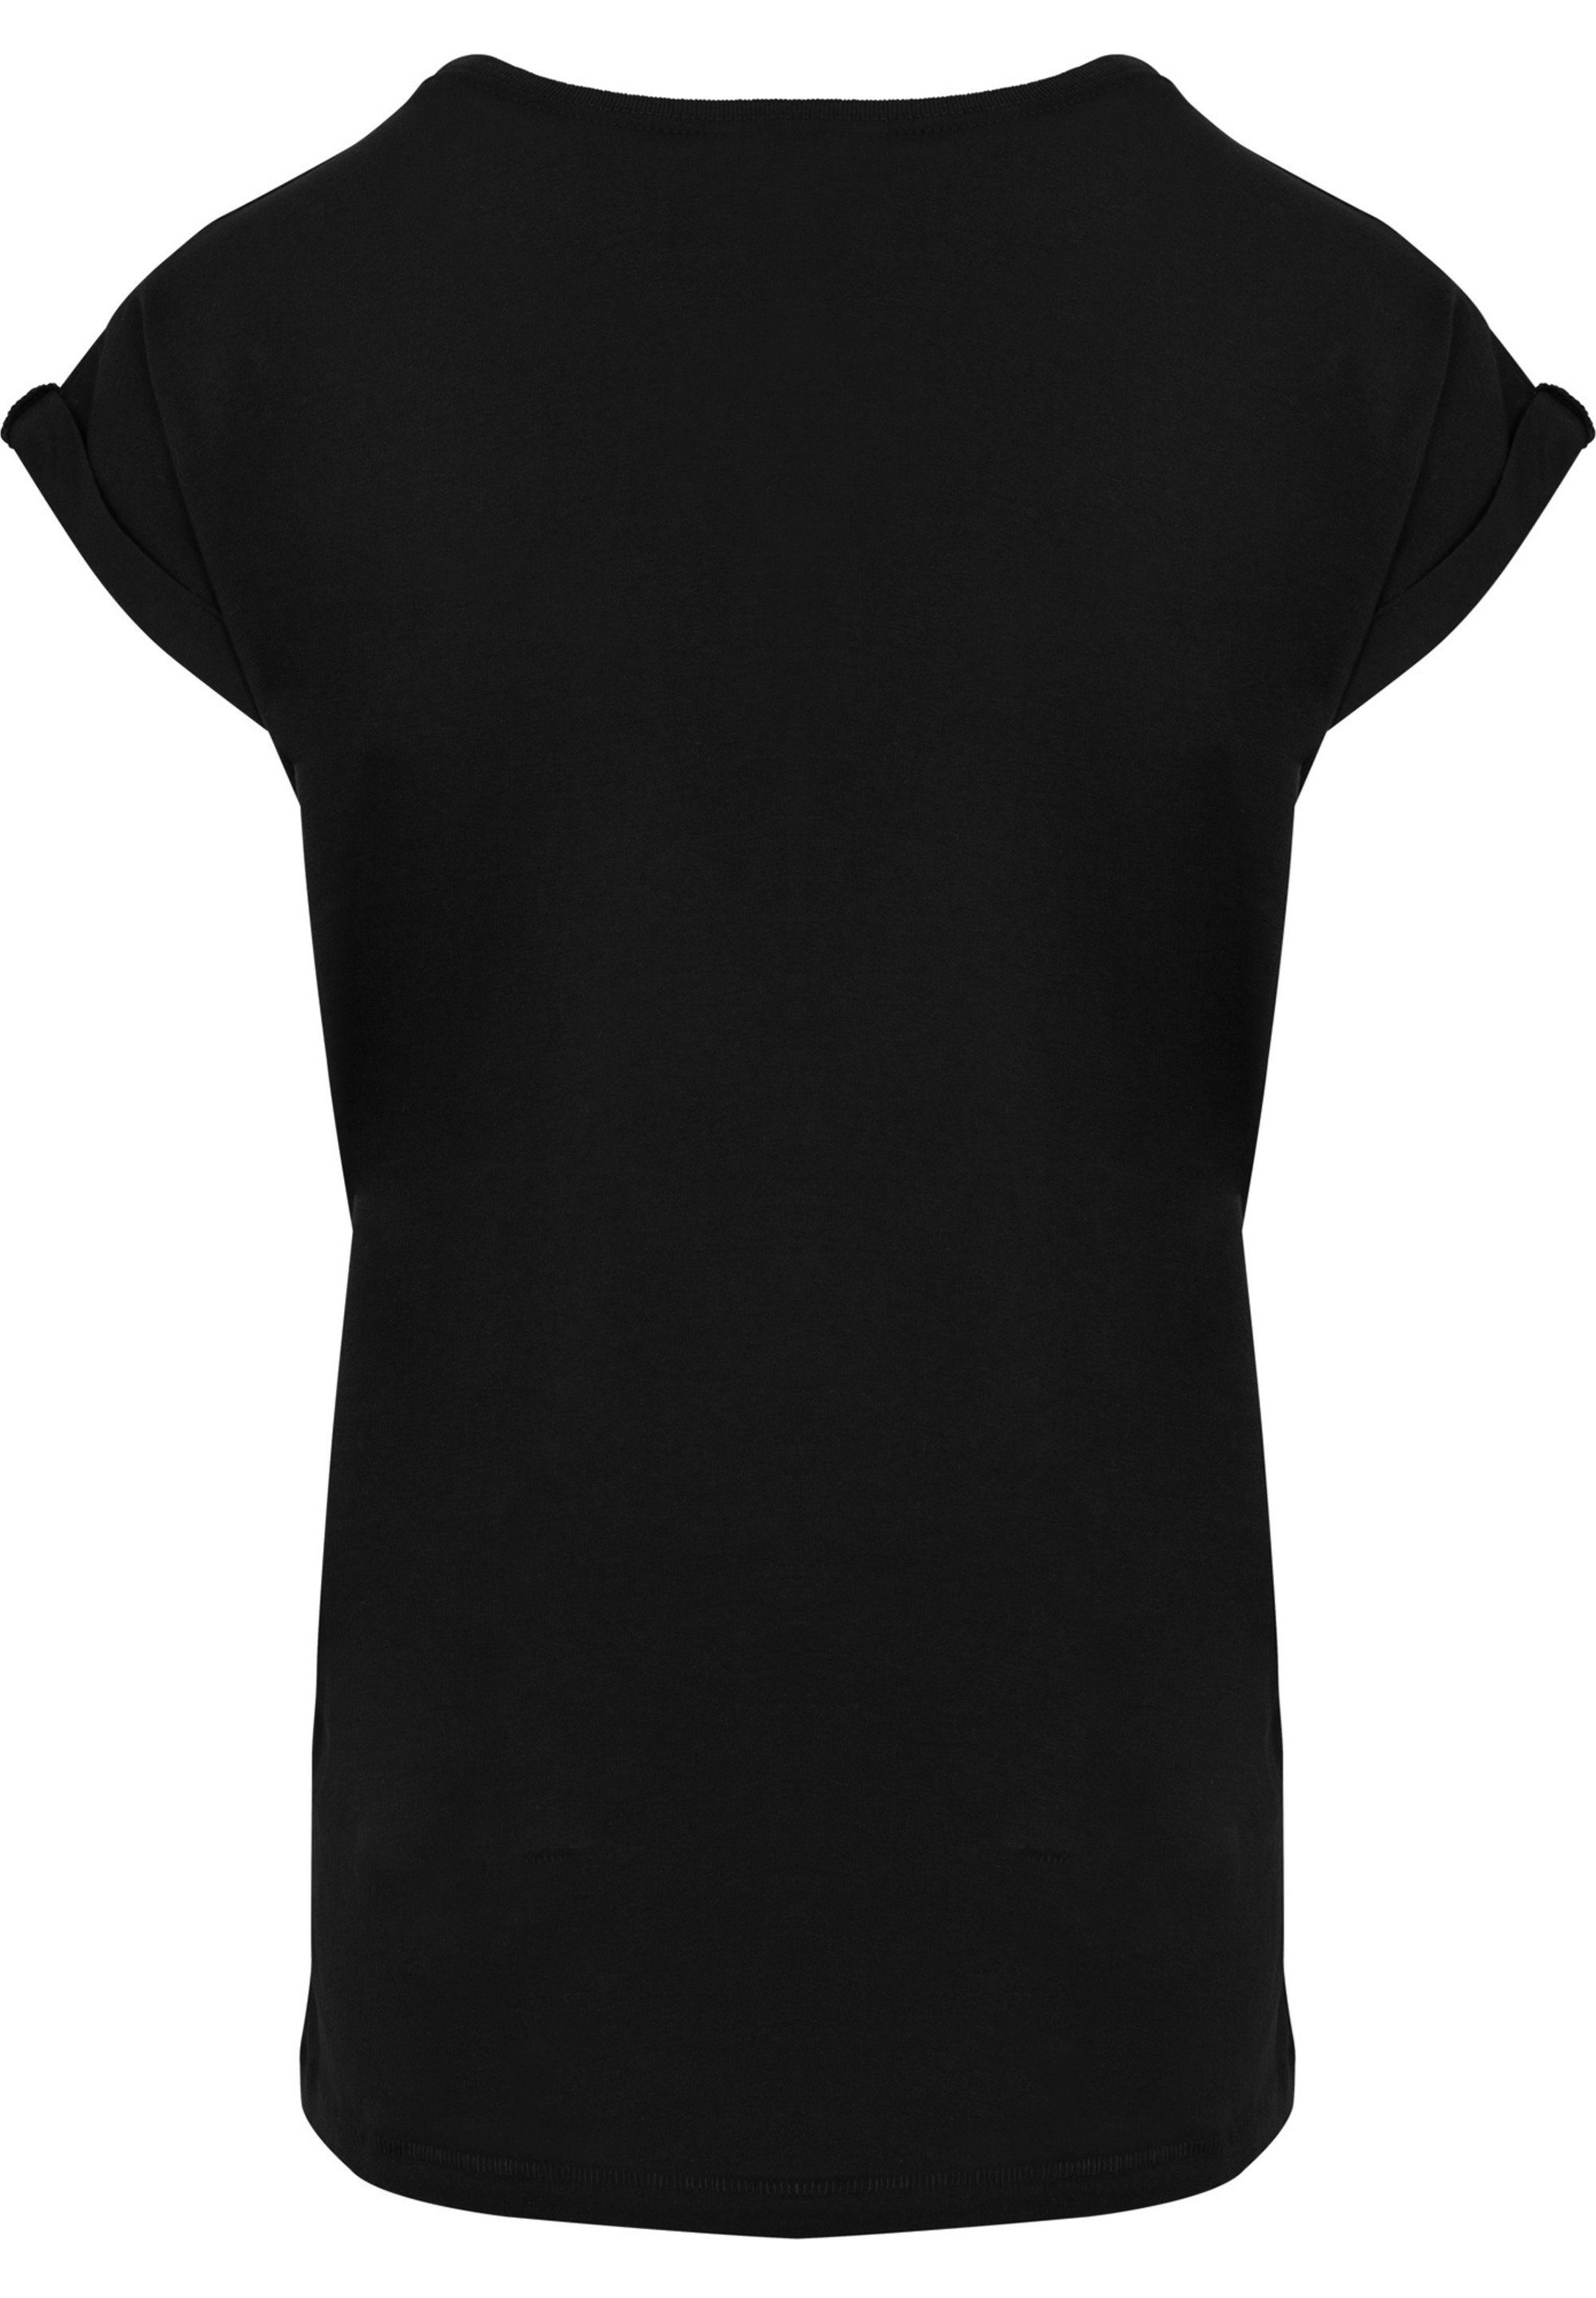 T-Shirt T-Shirt Ärmel,Bedruckt F4NT4STIC F4NT4STIC Merch,Regular-Fit,Kurze Damen,Premium